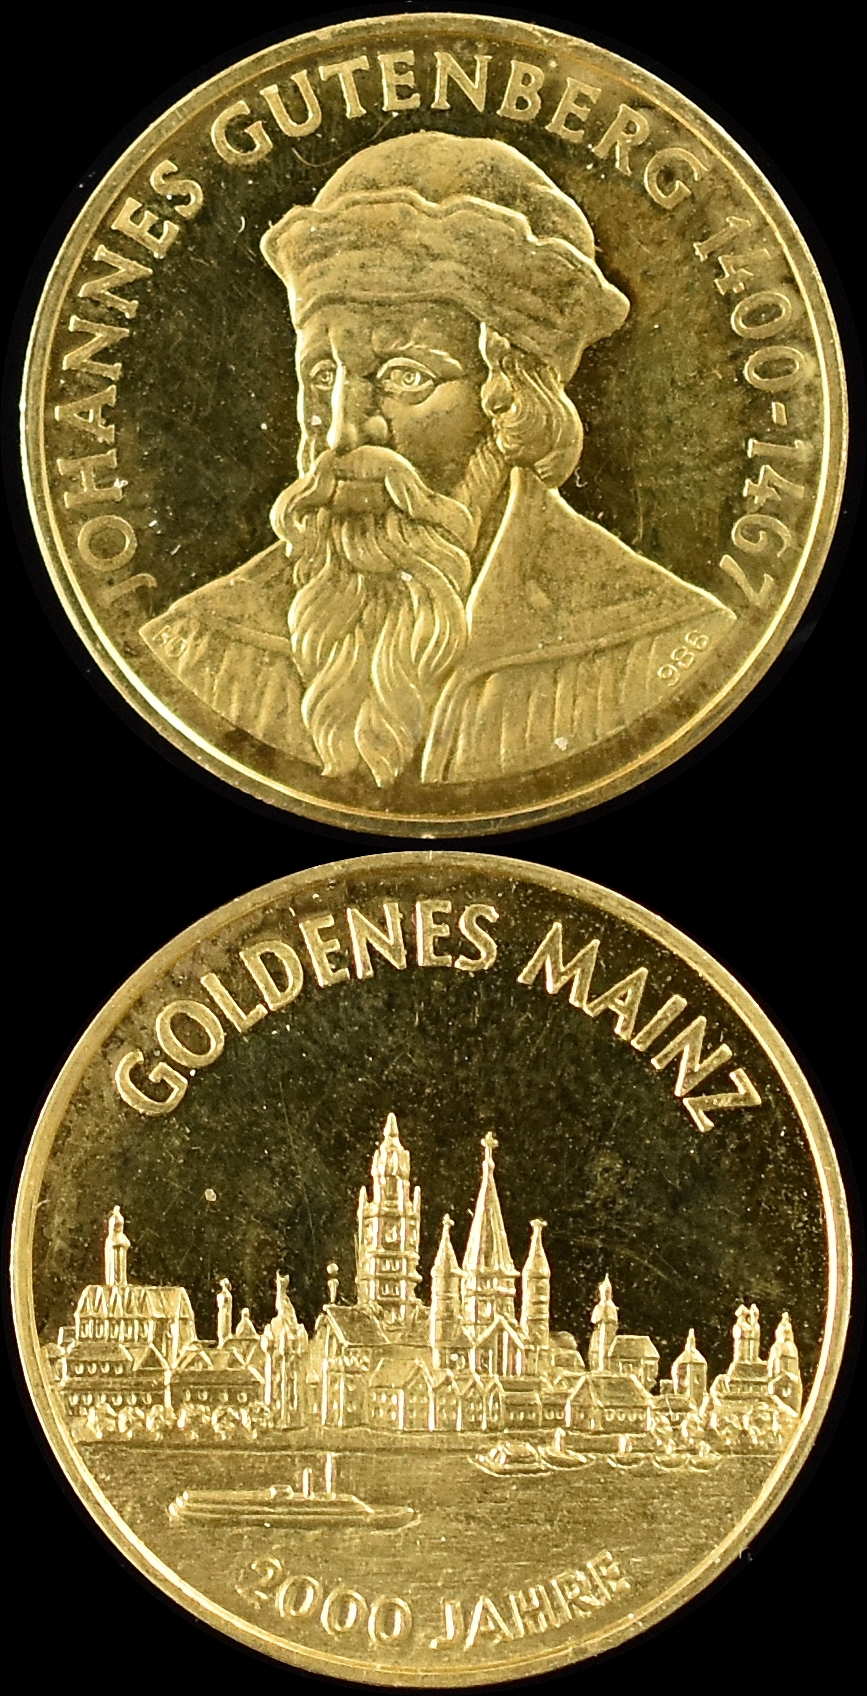 Goldmedaille: Goldenes Mainz 2000 Jahre